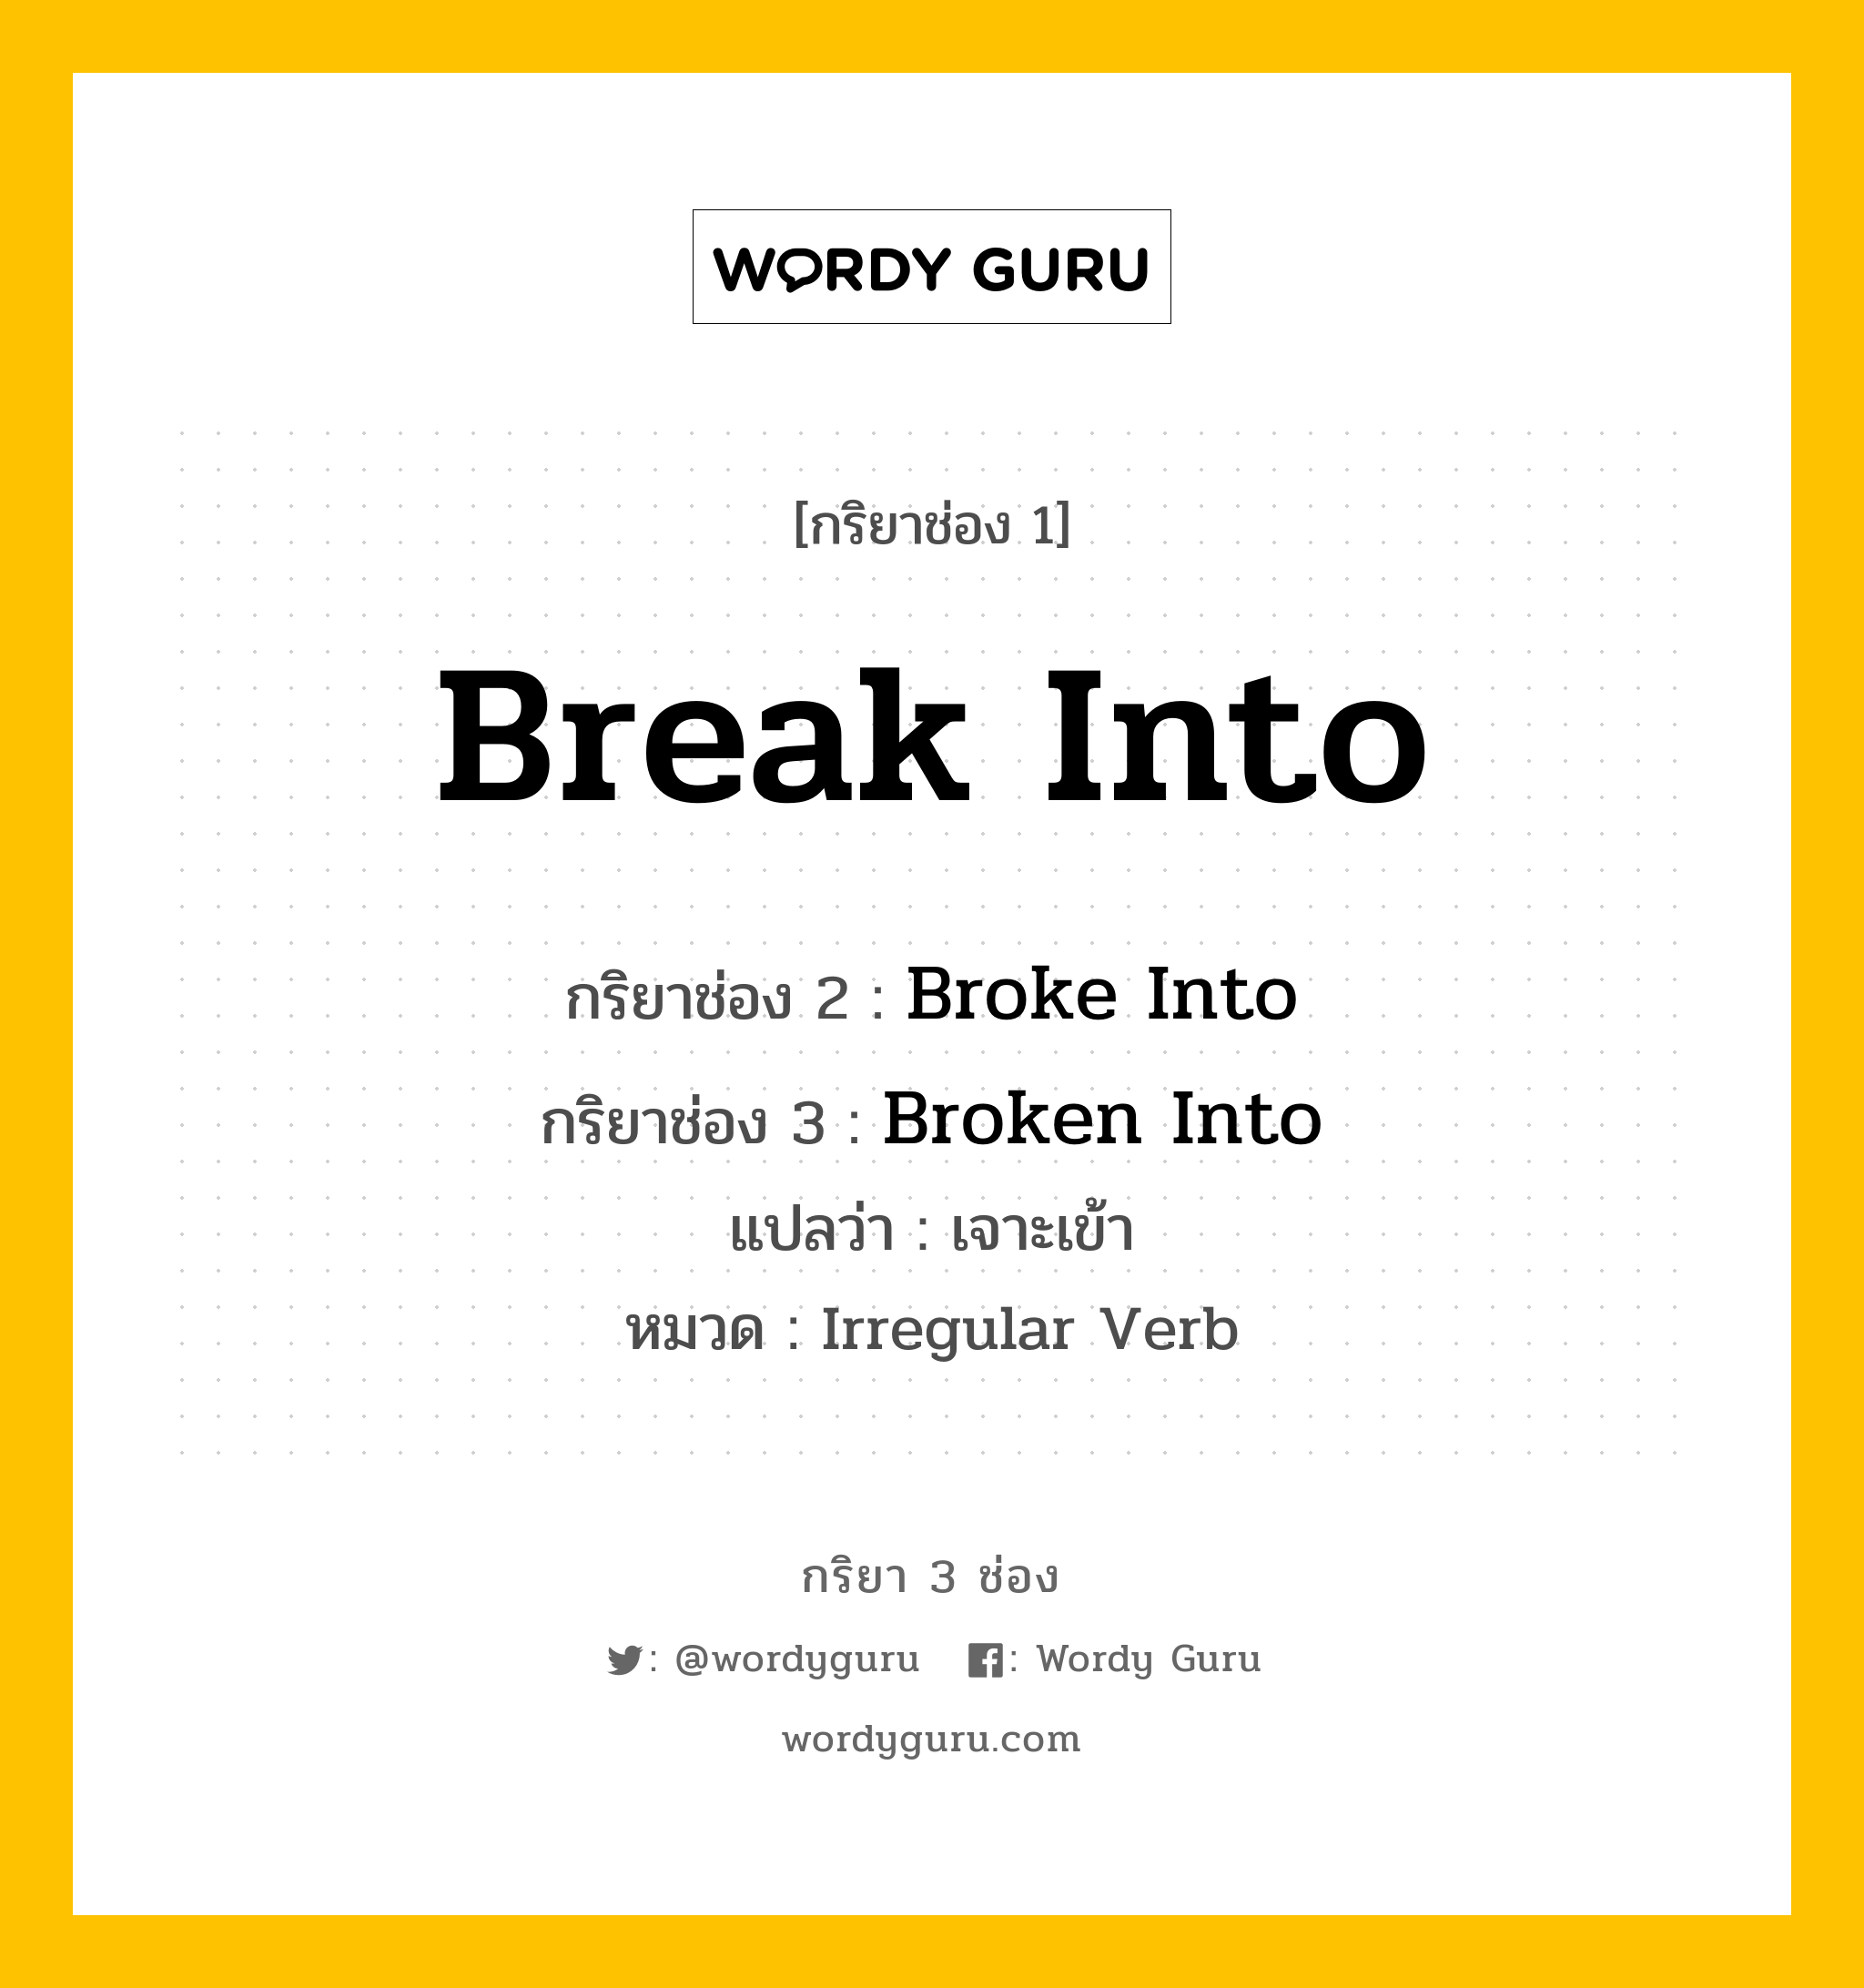 Break Into มีกริยา 3 ช่องอะไรบ้าง? คำศัพท์ในกลุ่มประเภท Irregular Verb, กริยาช่อง 1 Break Into กริยาช่อง 2 Broke Into กริยาช่อง 3 Broken Into แปลว่า เจาะเข้า หมวด Irregular Verb หมวด Irregular Verb